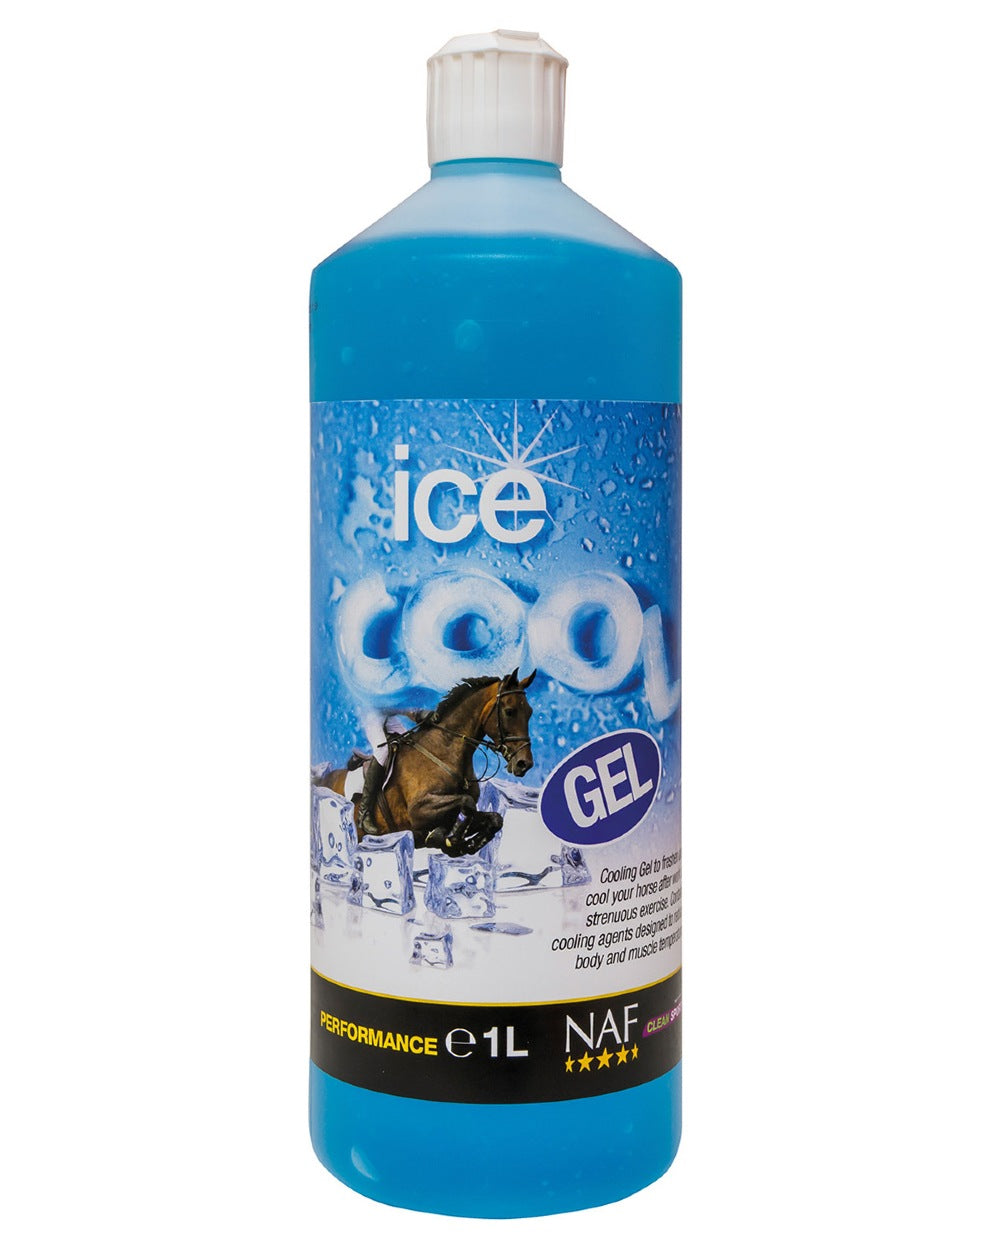 NAF Ice Cool Gel 1lt on white background